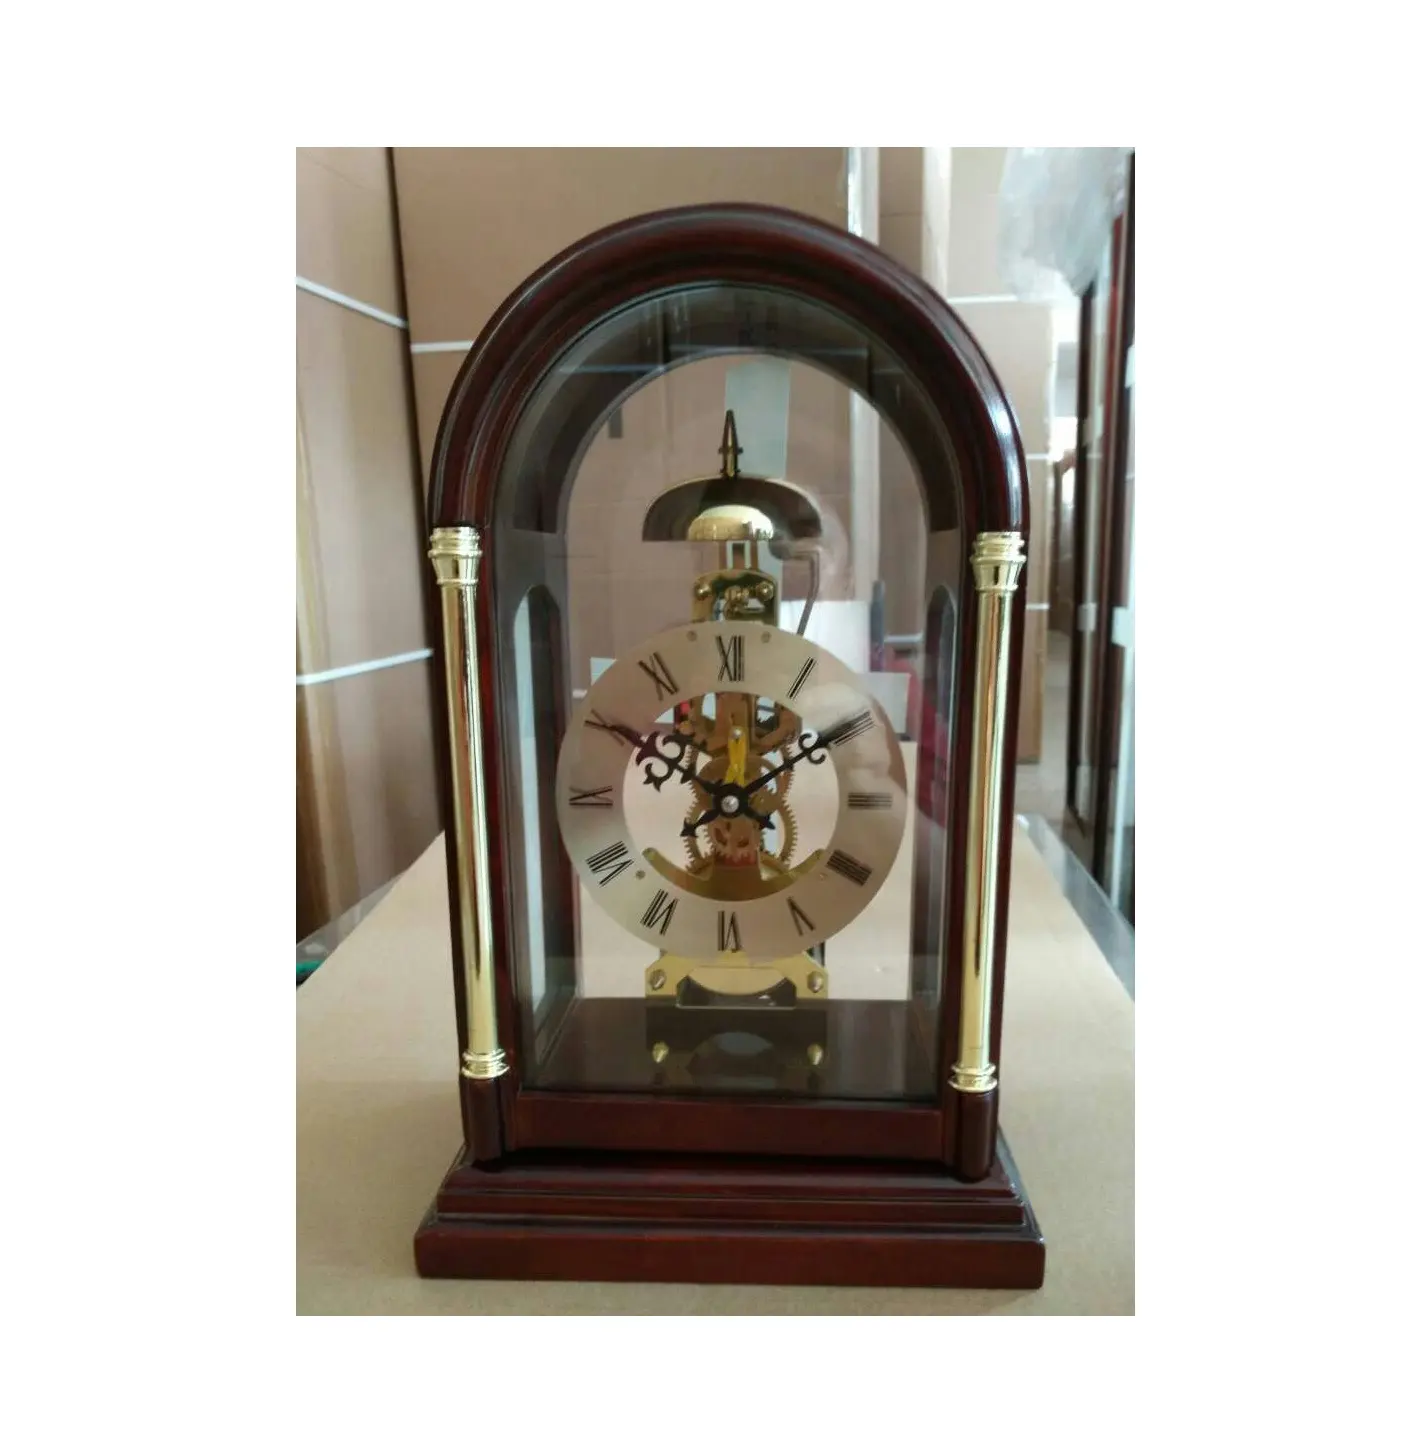 標準的なマンテル時計で作られた時計は、装飾的な彫刻が施された正面のアクセントとシルクスクリーンで見るのが楽しいです